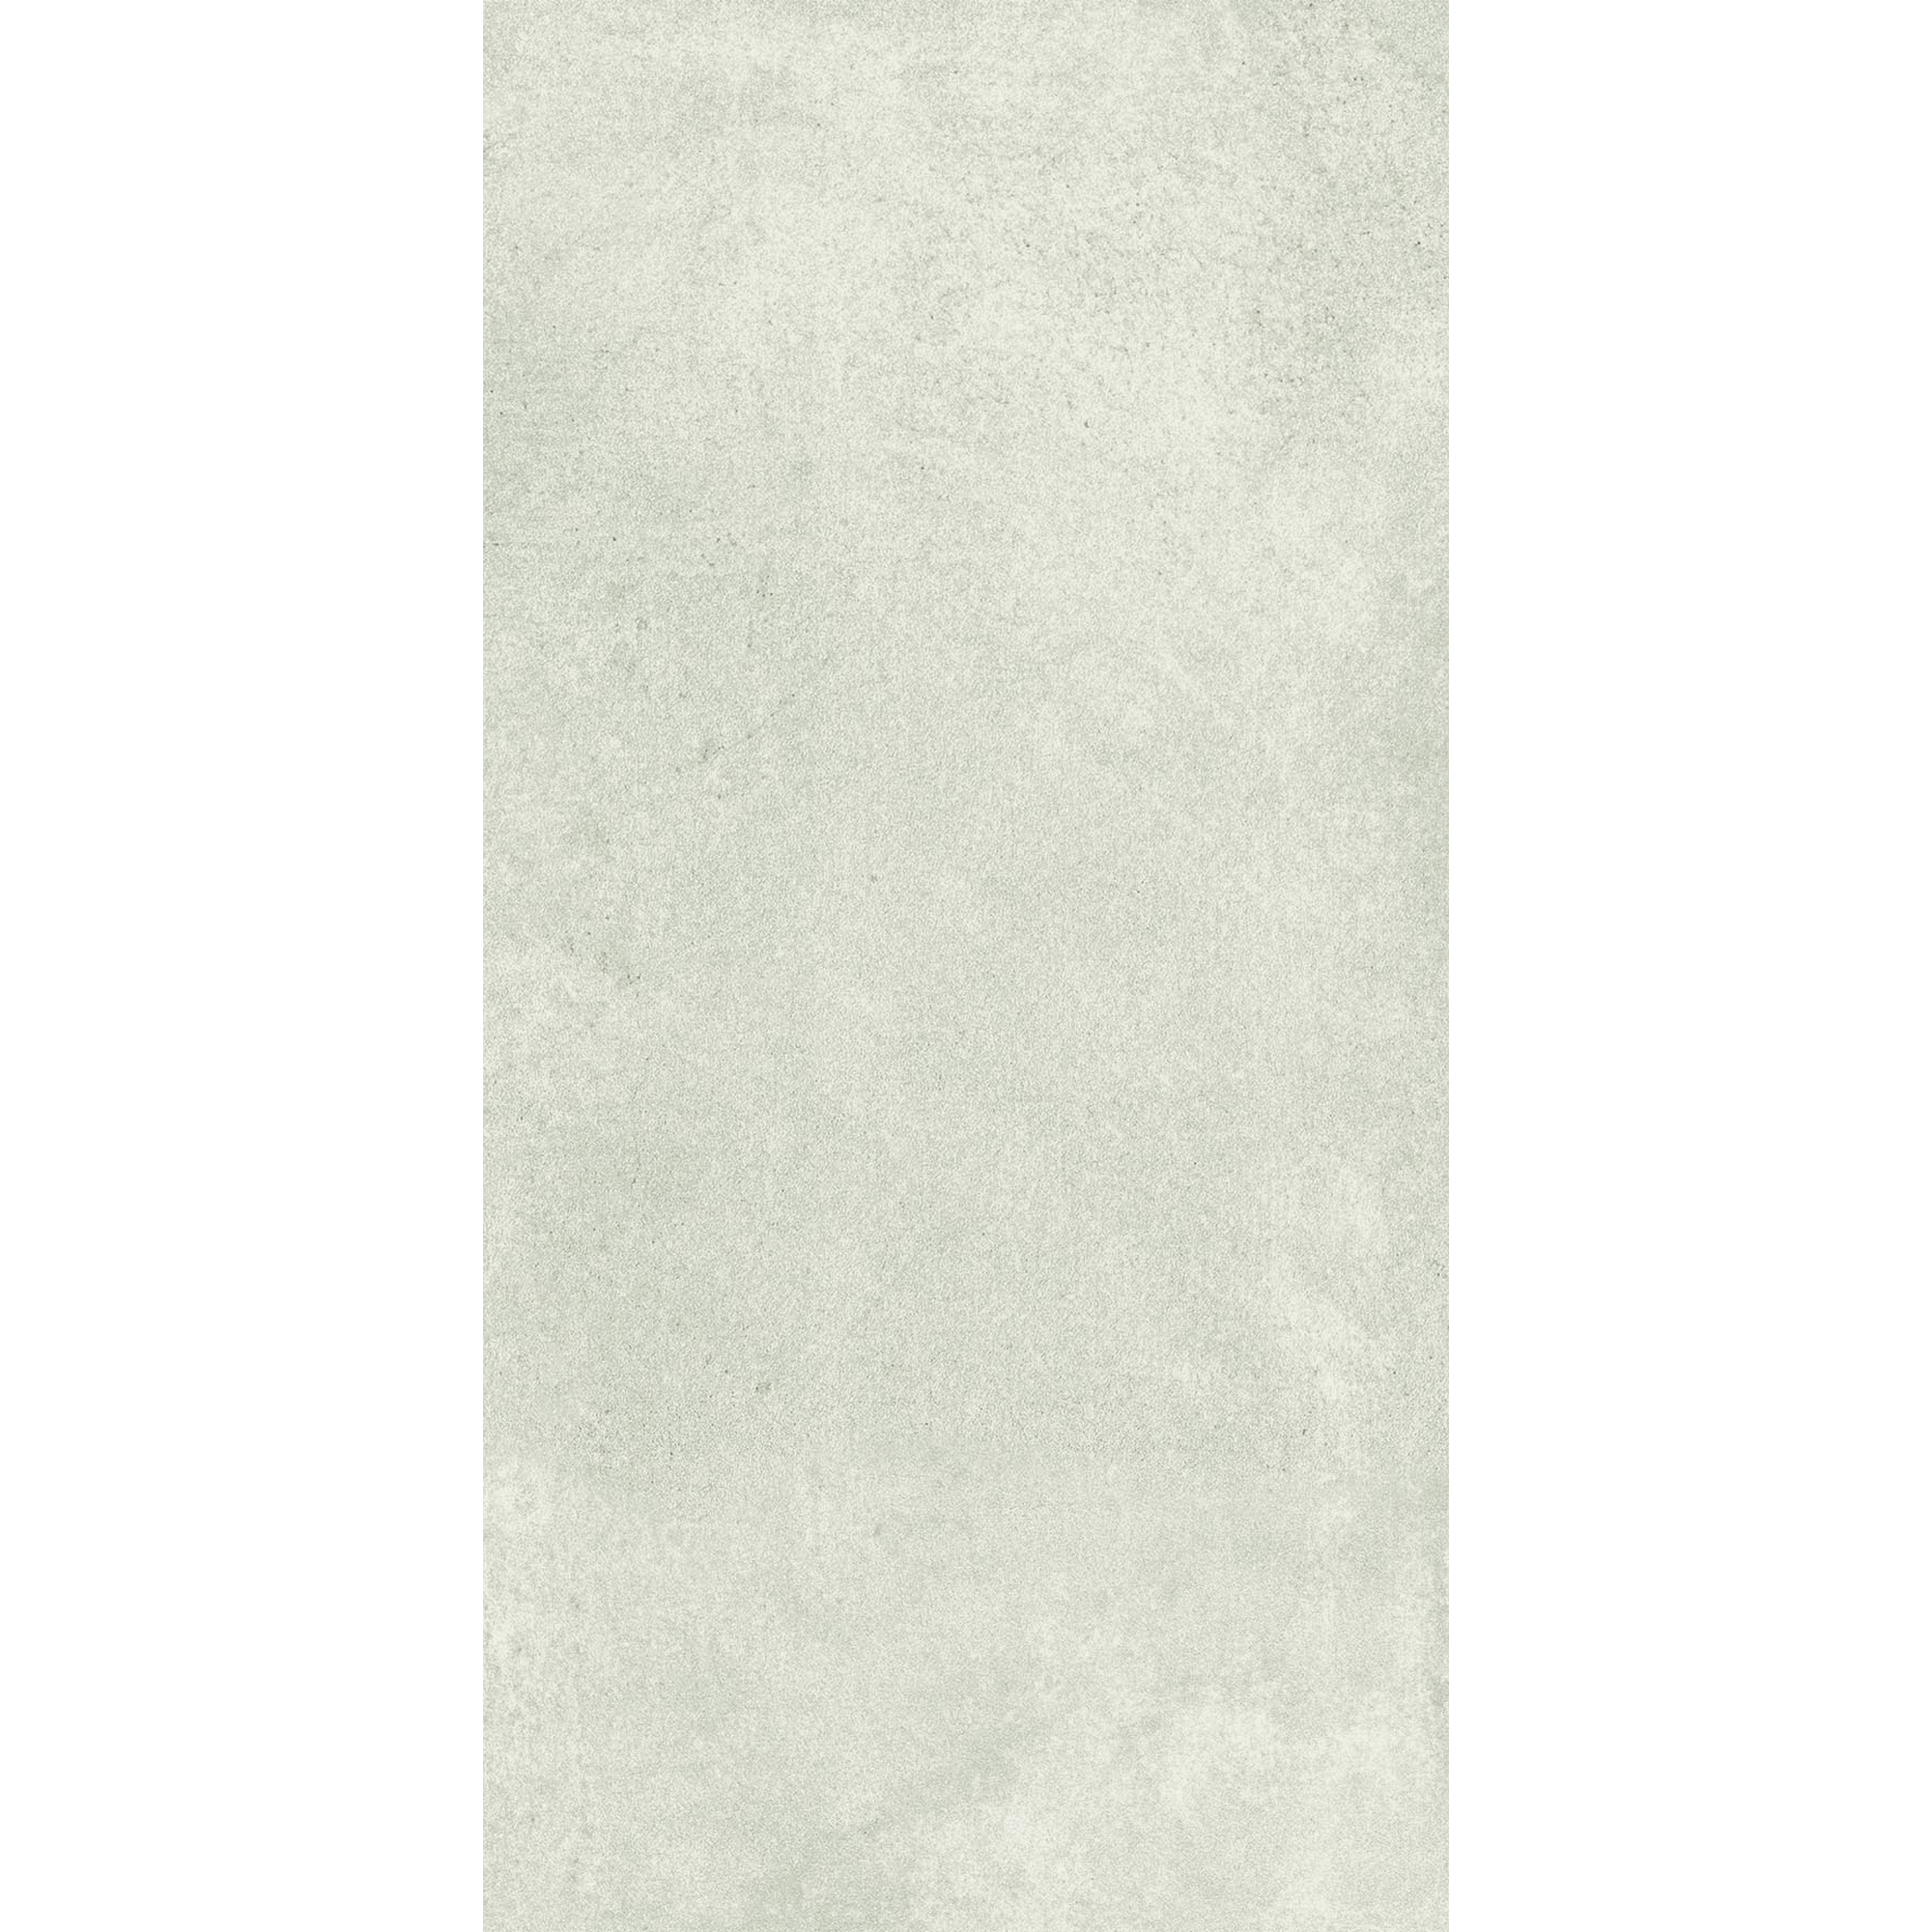 Bodenfliese 'Marte' Feinsteinzeug beige 30 x 60 cm + product picture